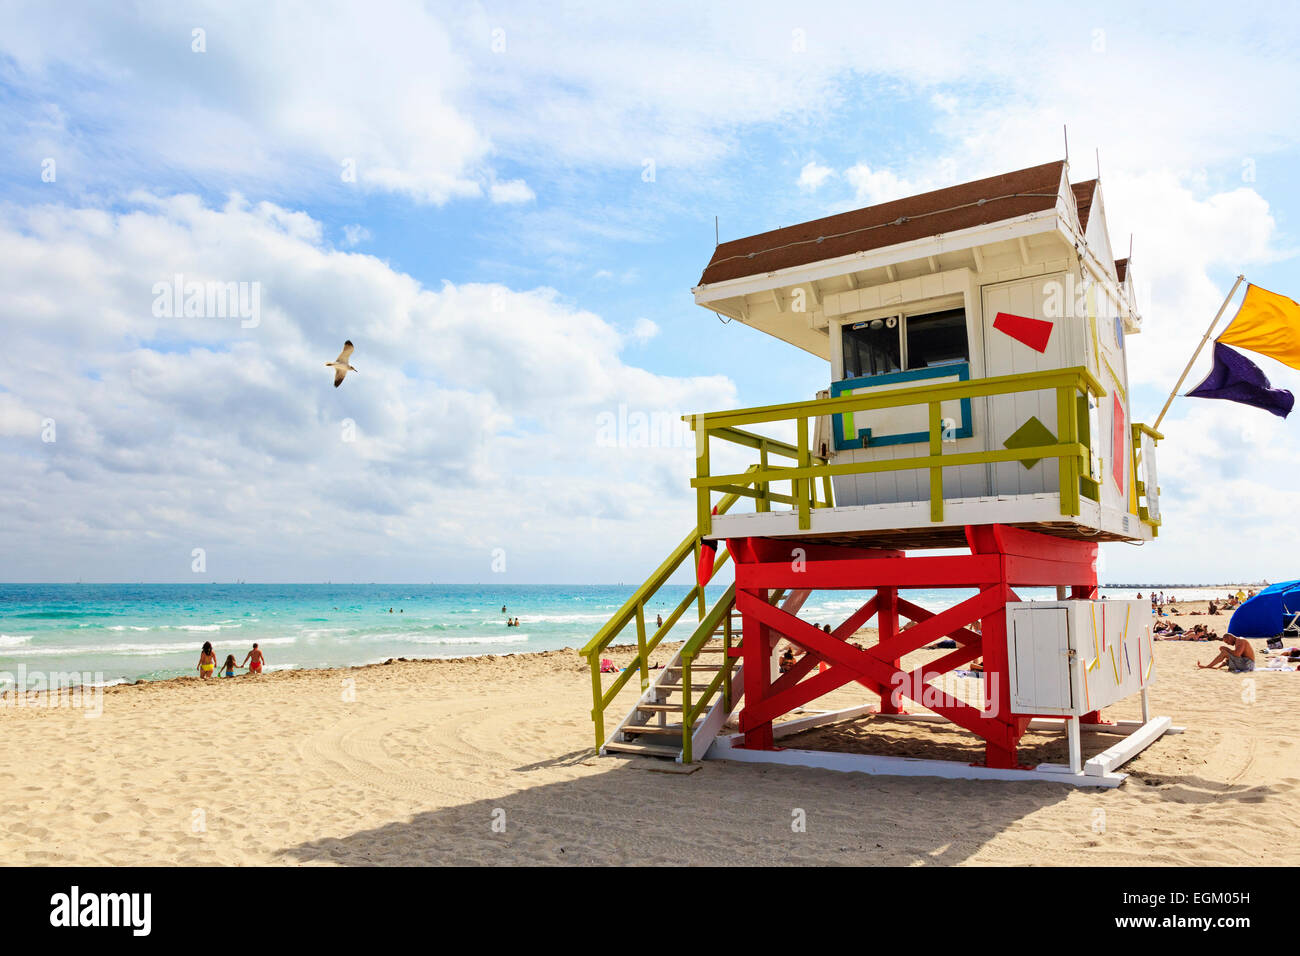 Miami South Beach, Ocean View, mit dem Pazifischen Ozean und hölzernen Rettungsschwimmer Unterschlupf, Miami, Florida, USA Stockfoto